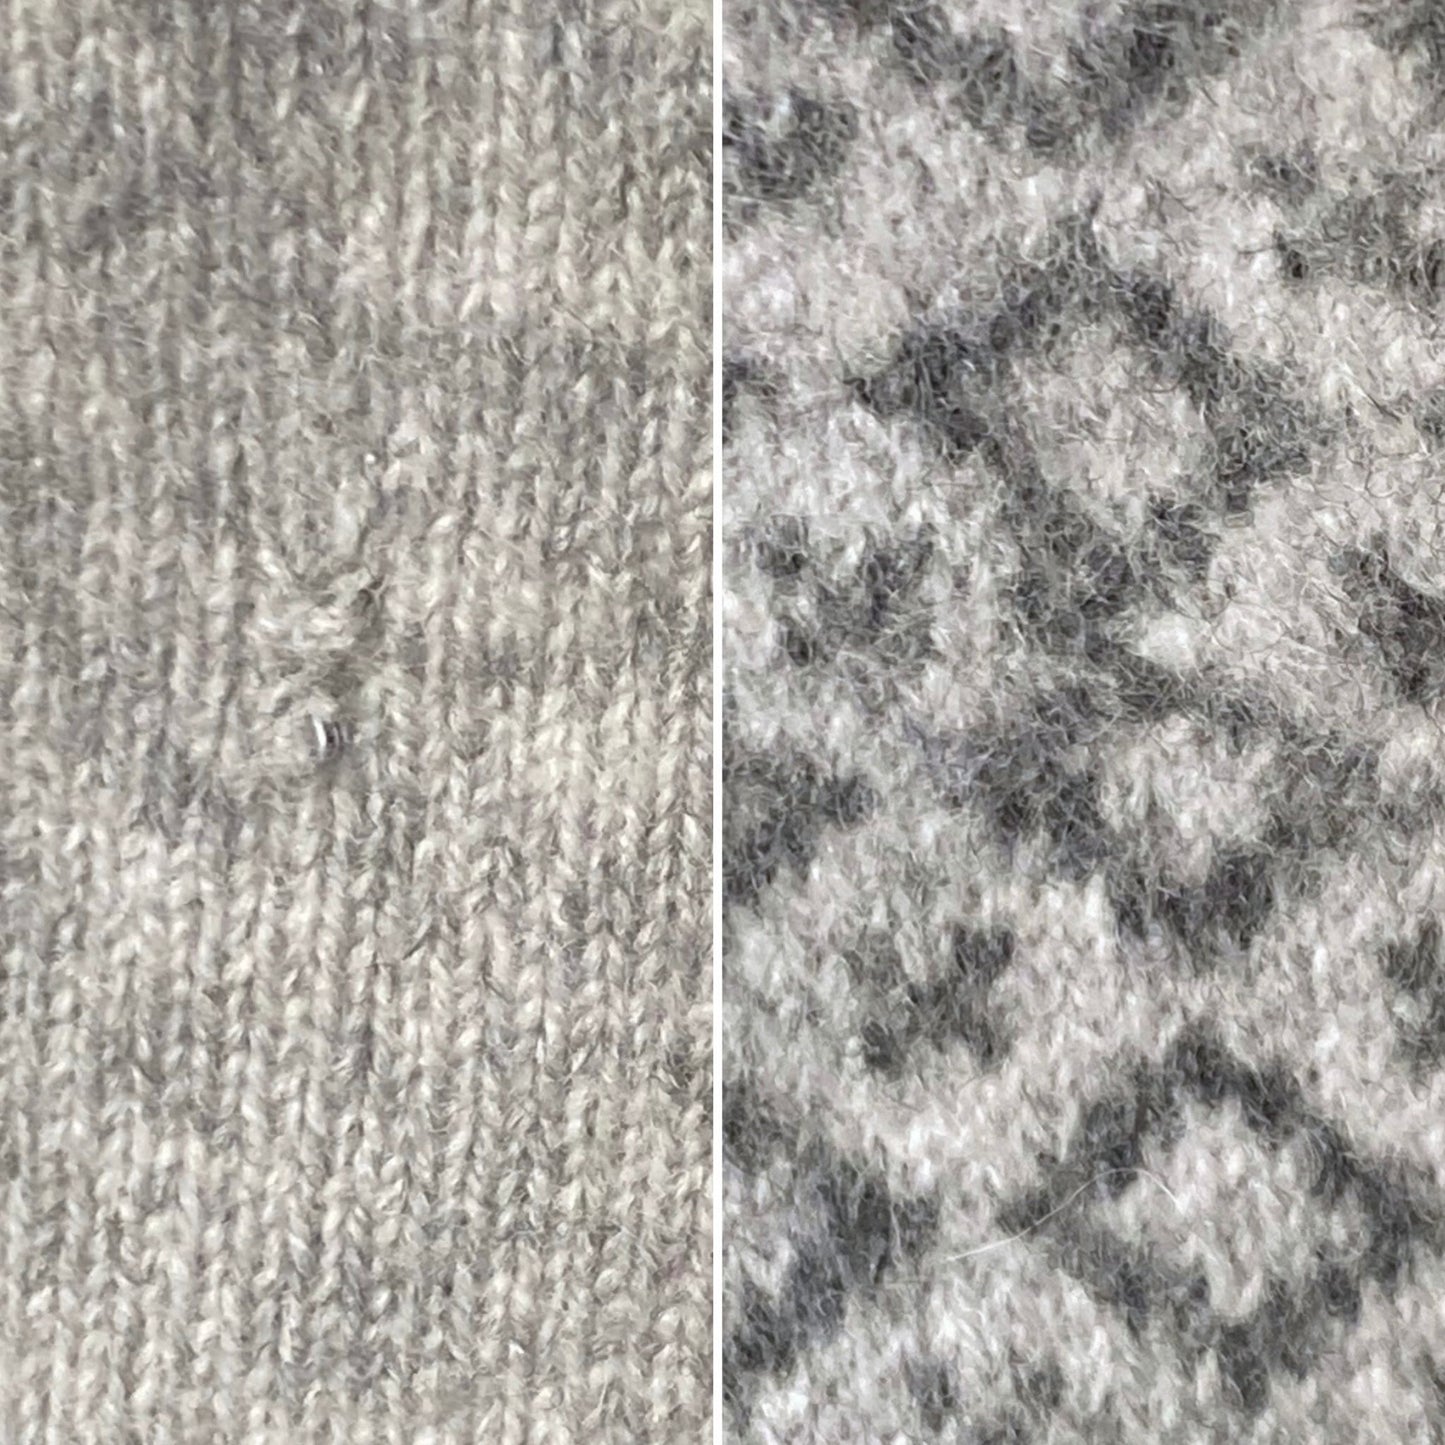 Soft Grey Marl Vintage Wool V Neck Jumper,  Approx UK size 12-16 ( w) sml to med (m)